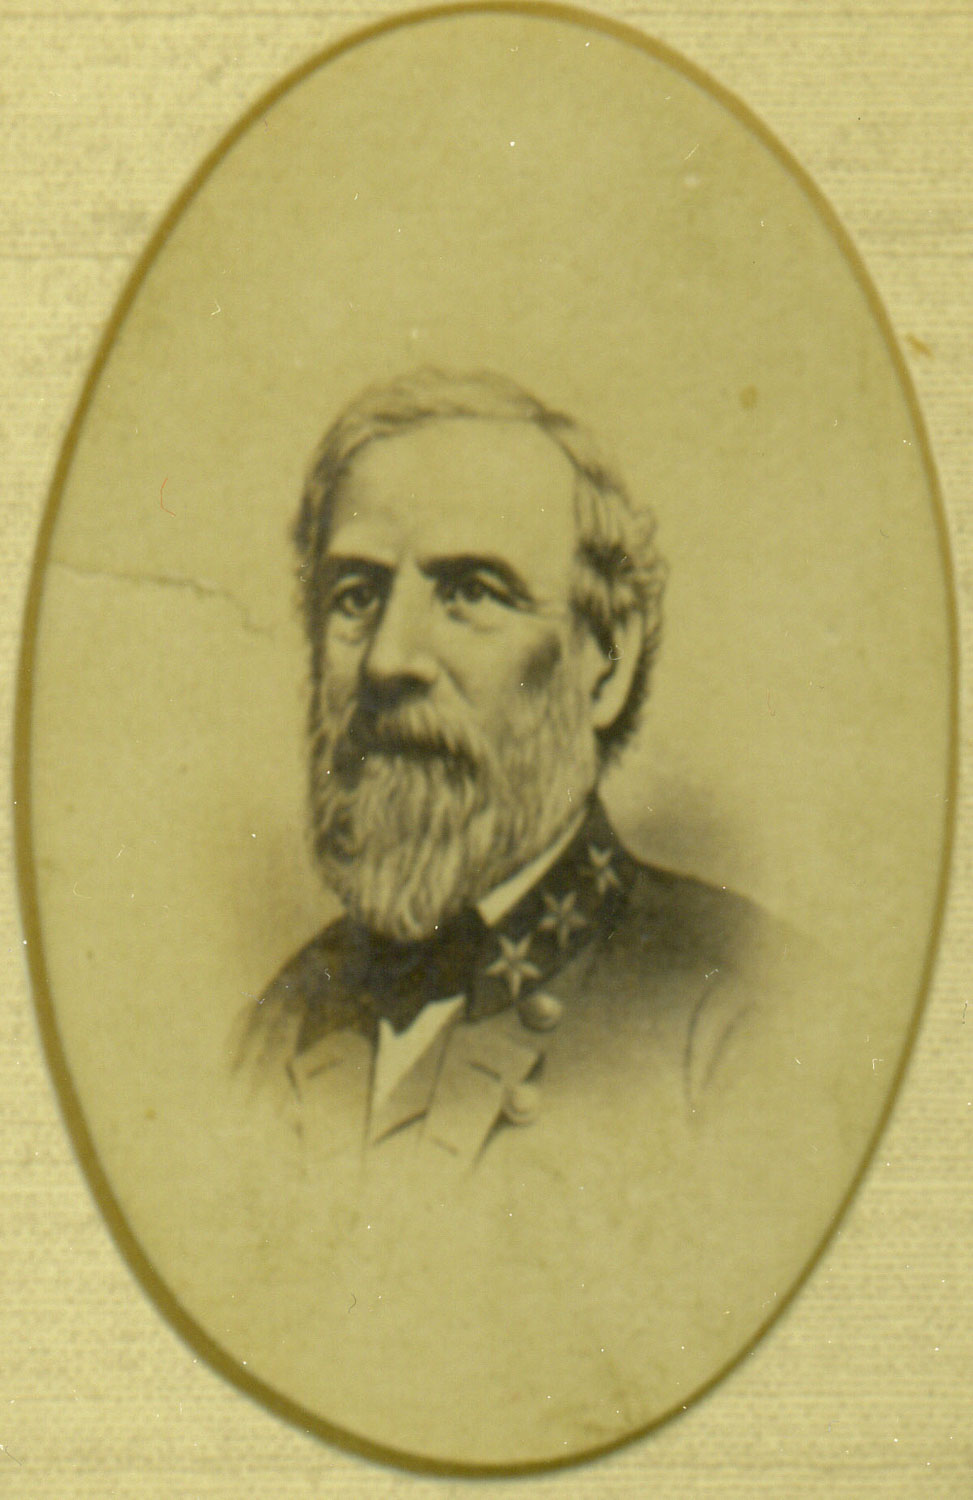 Robert E. Lee 11